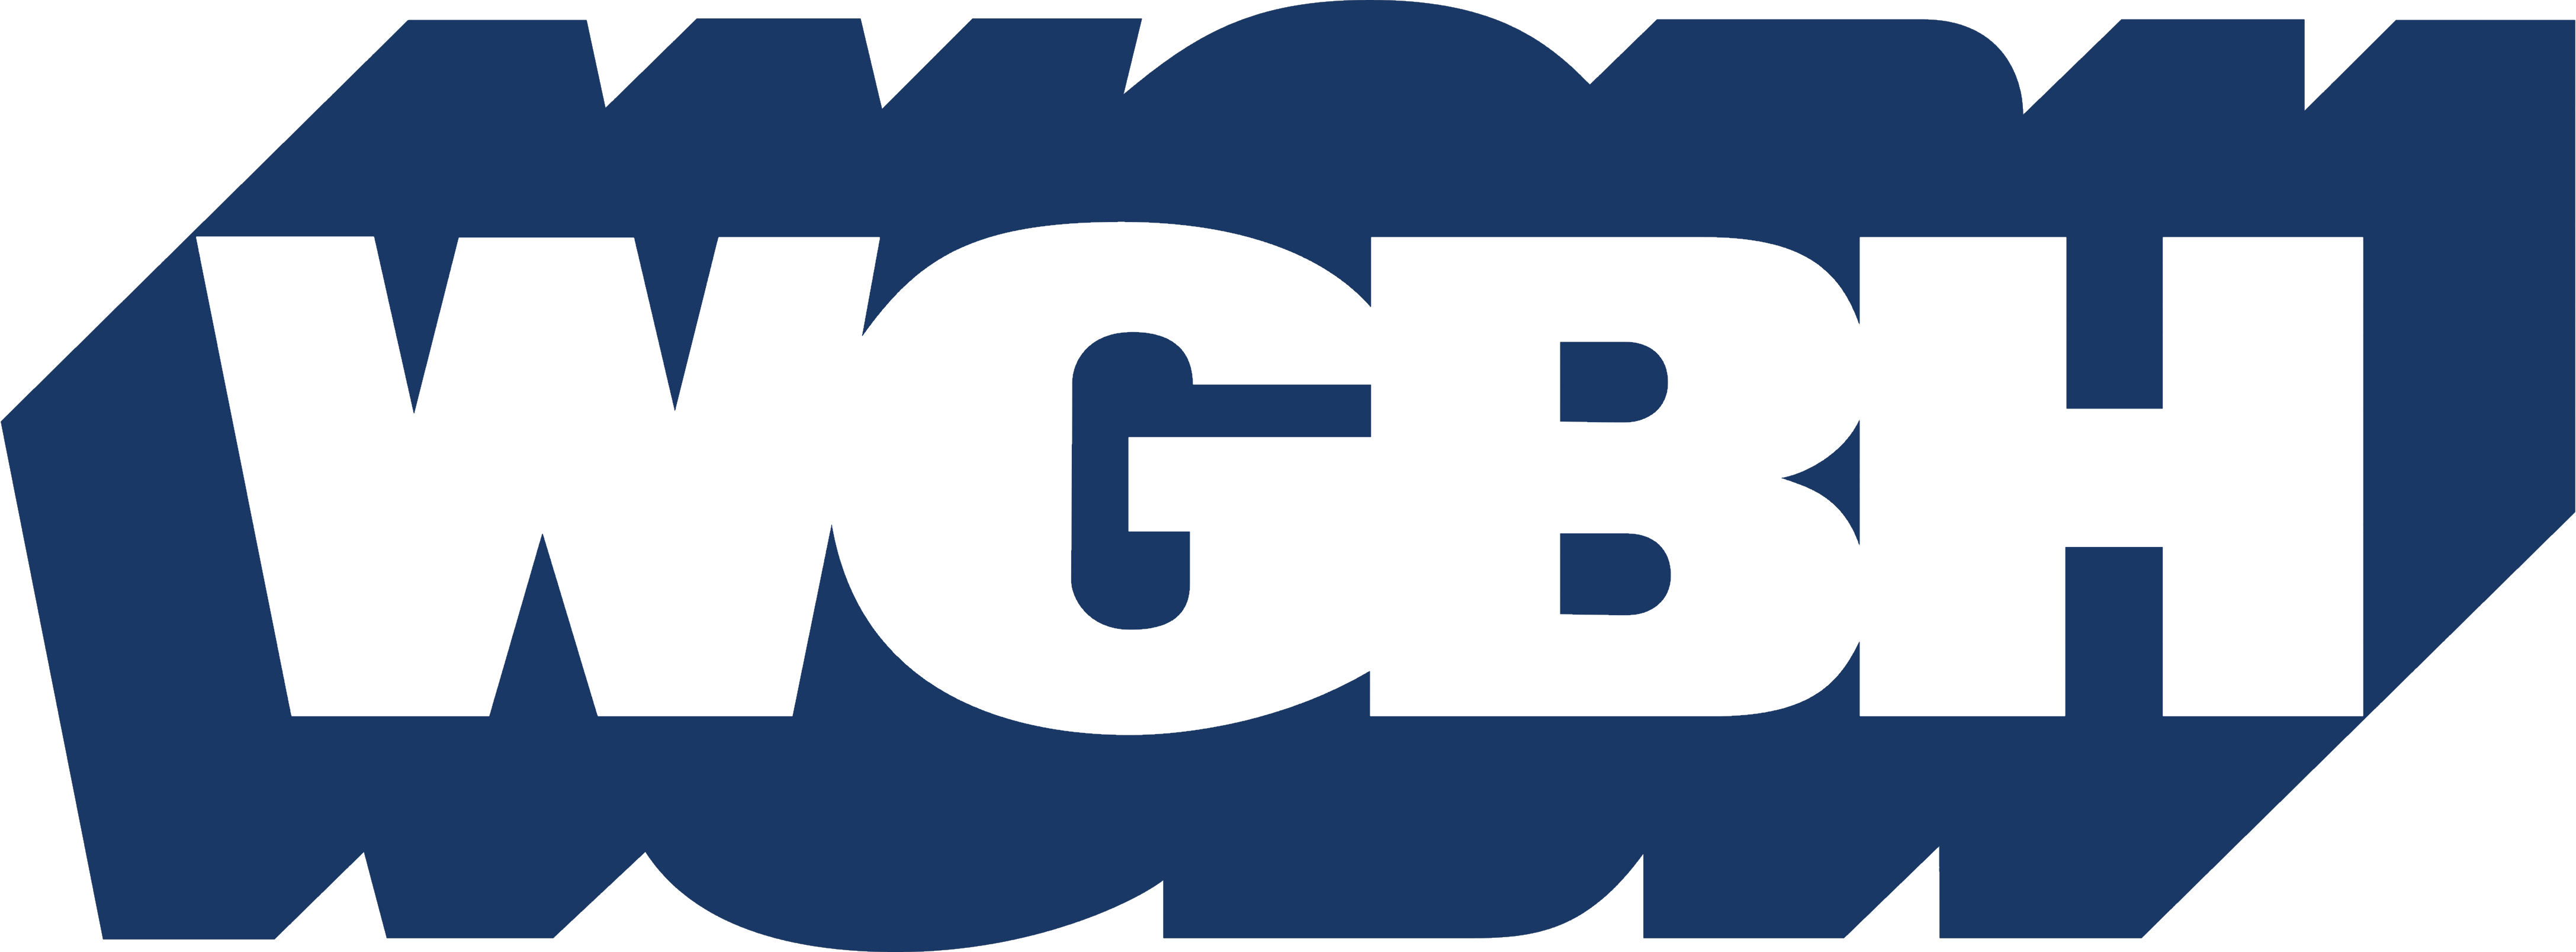 WGBH logo, logotype